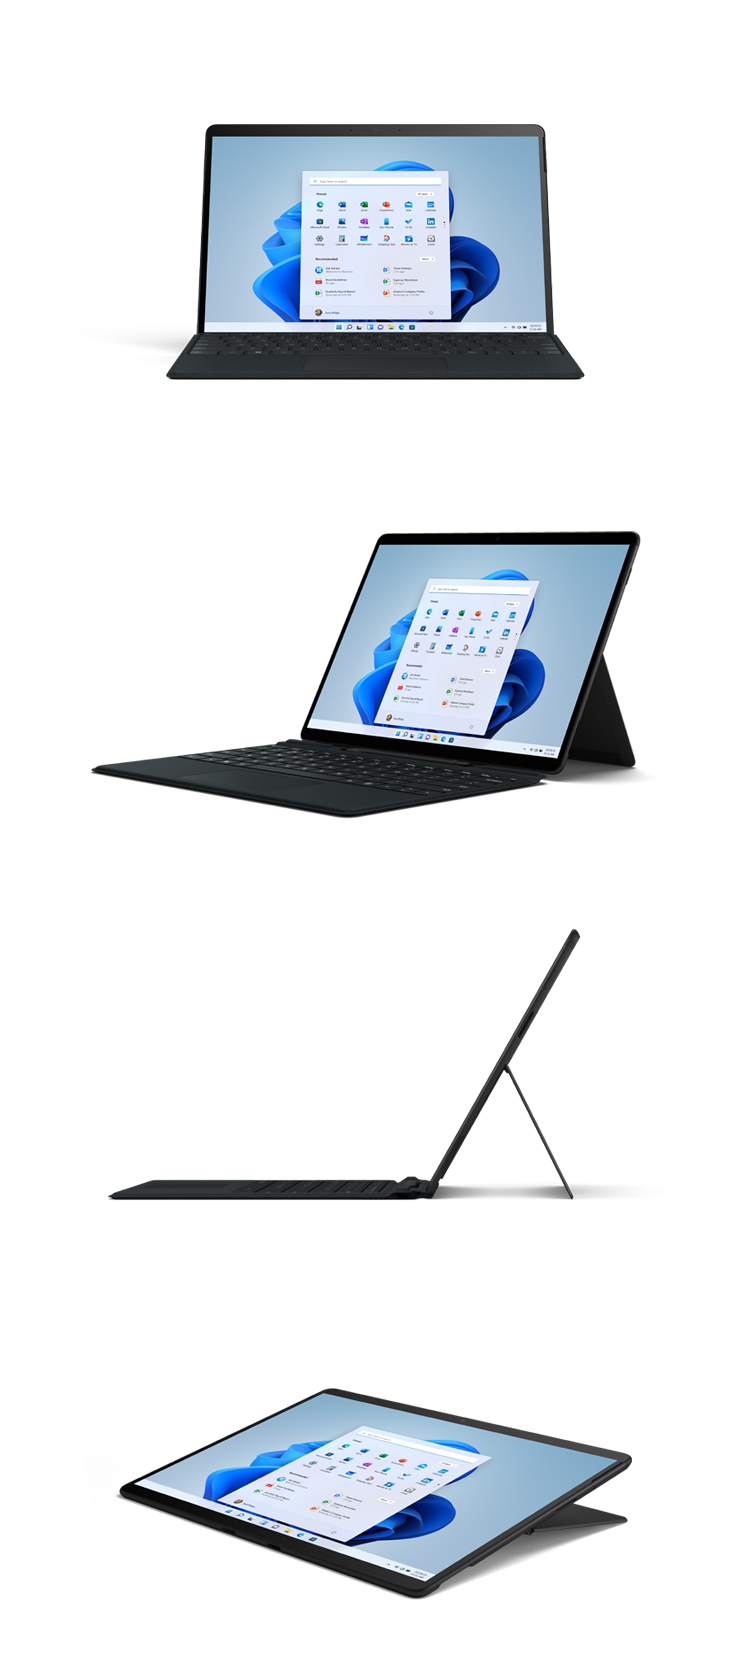 Abbildungen des Surface Pro X in Schwarz von vorne, schräg, von der Seite und im Studio-Modus.